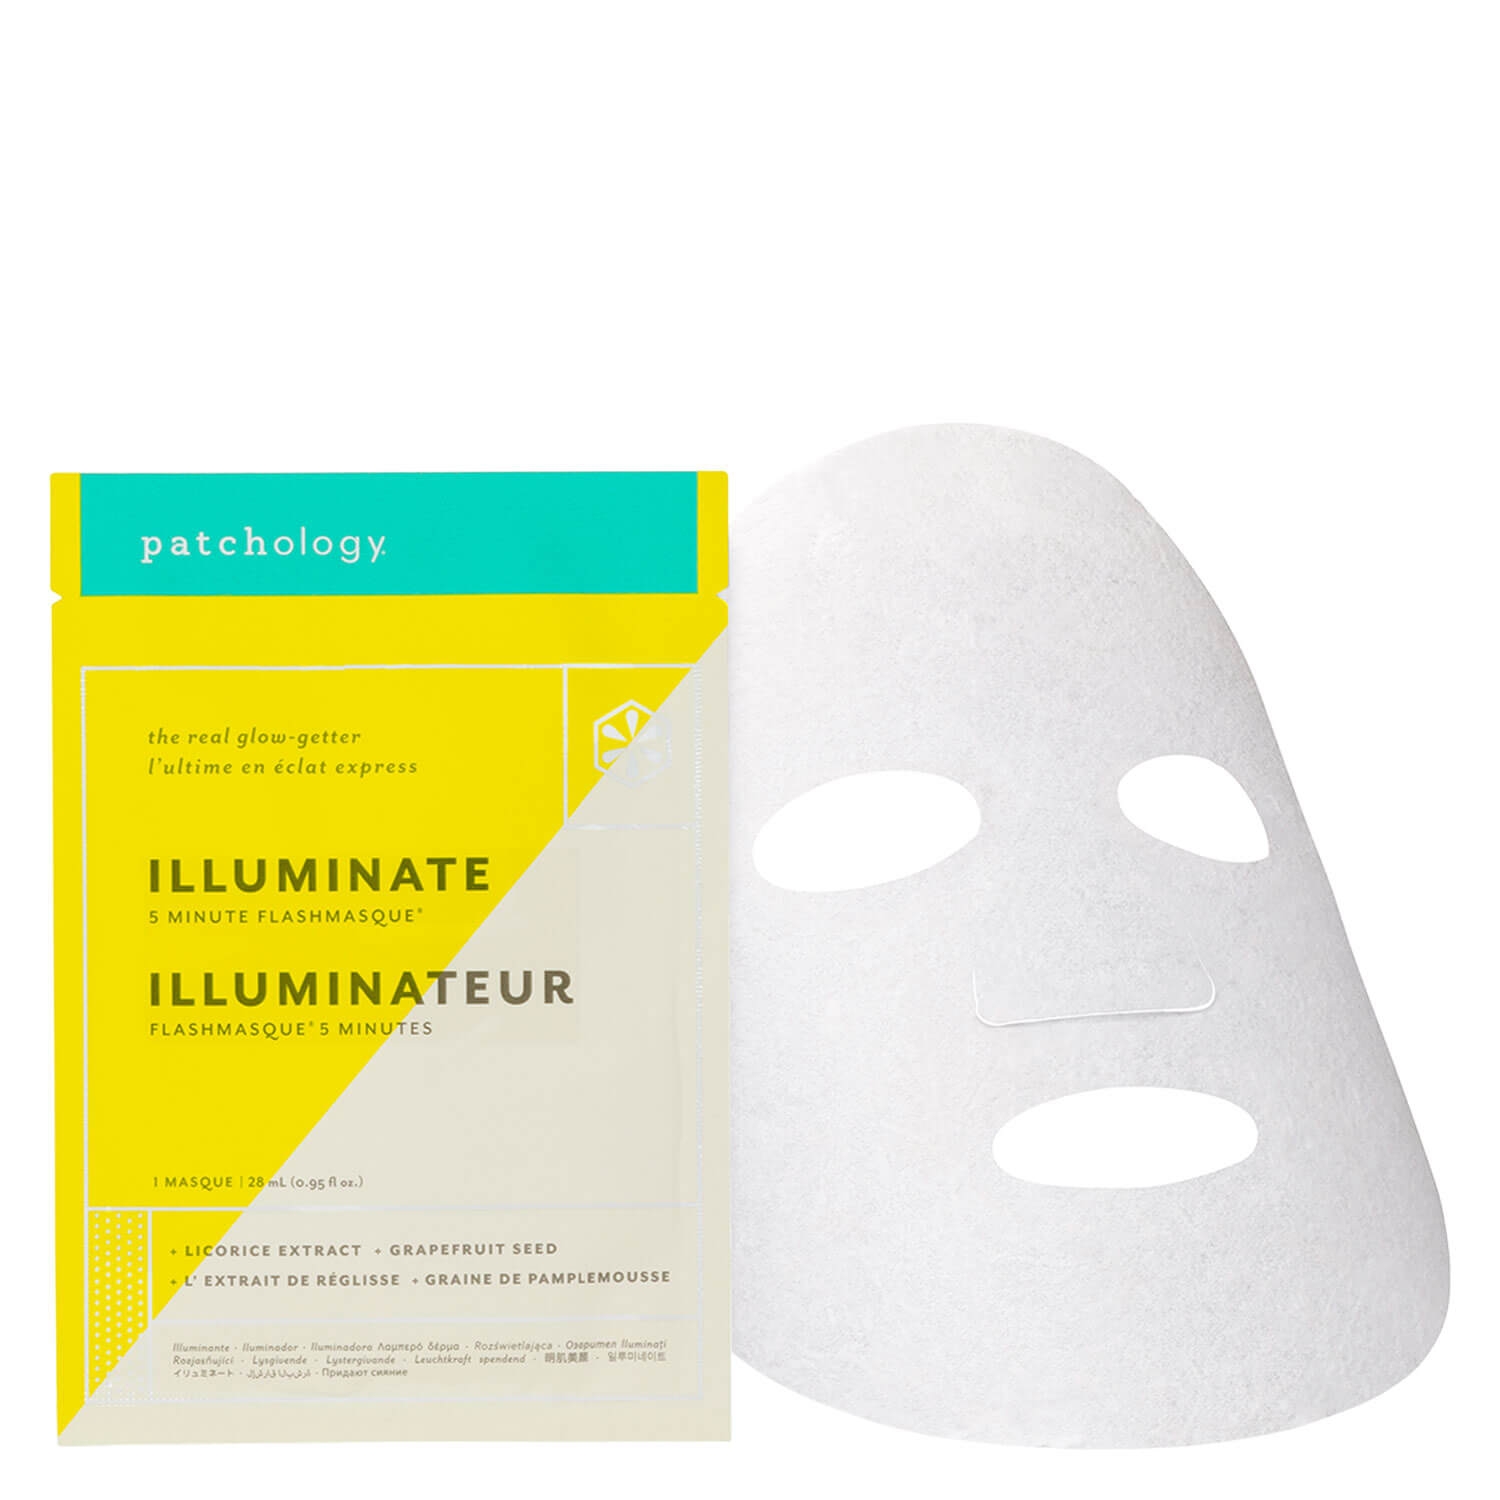 Produktbild von FlashMasque - Illuminate 5 Minute Sheet Mask